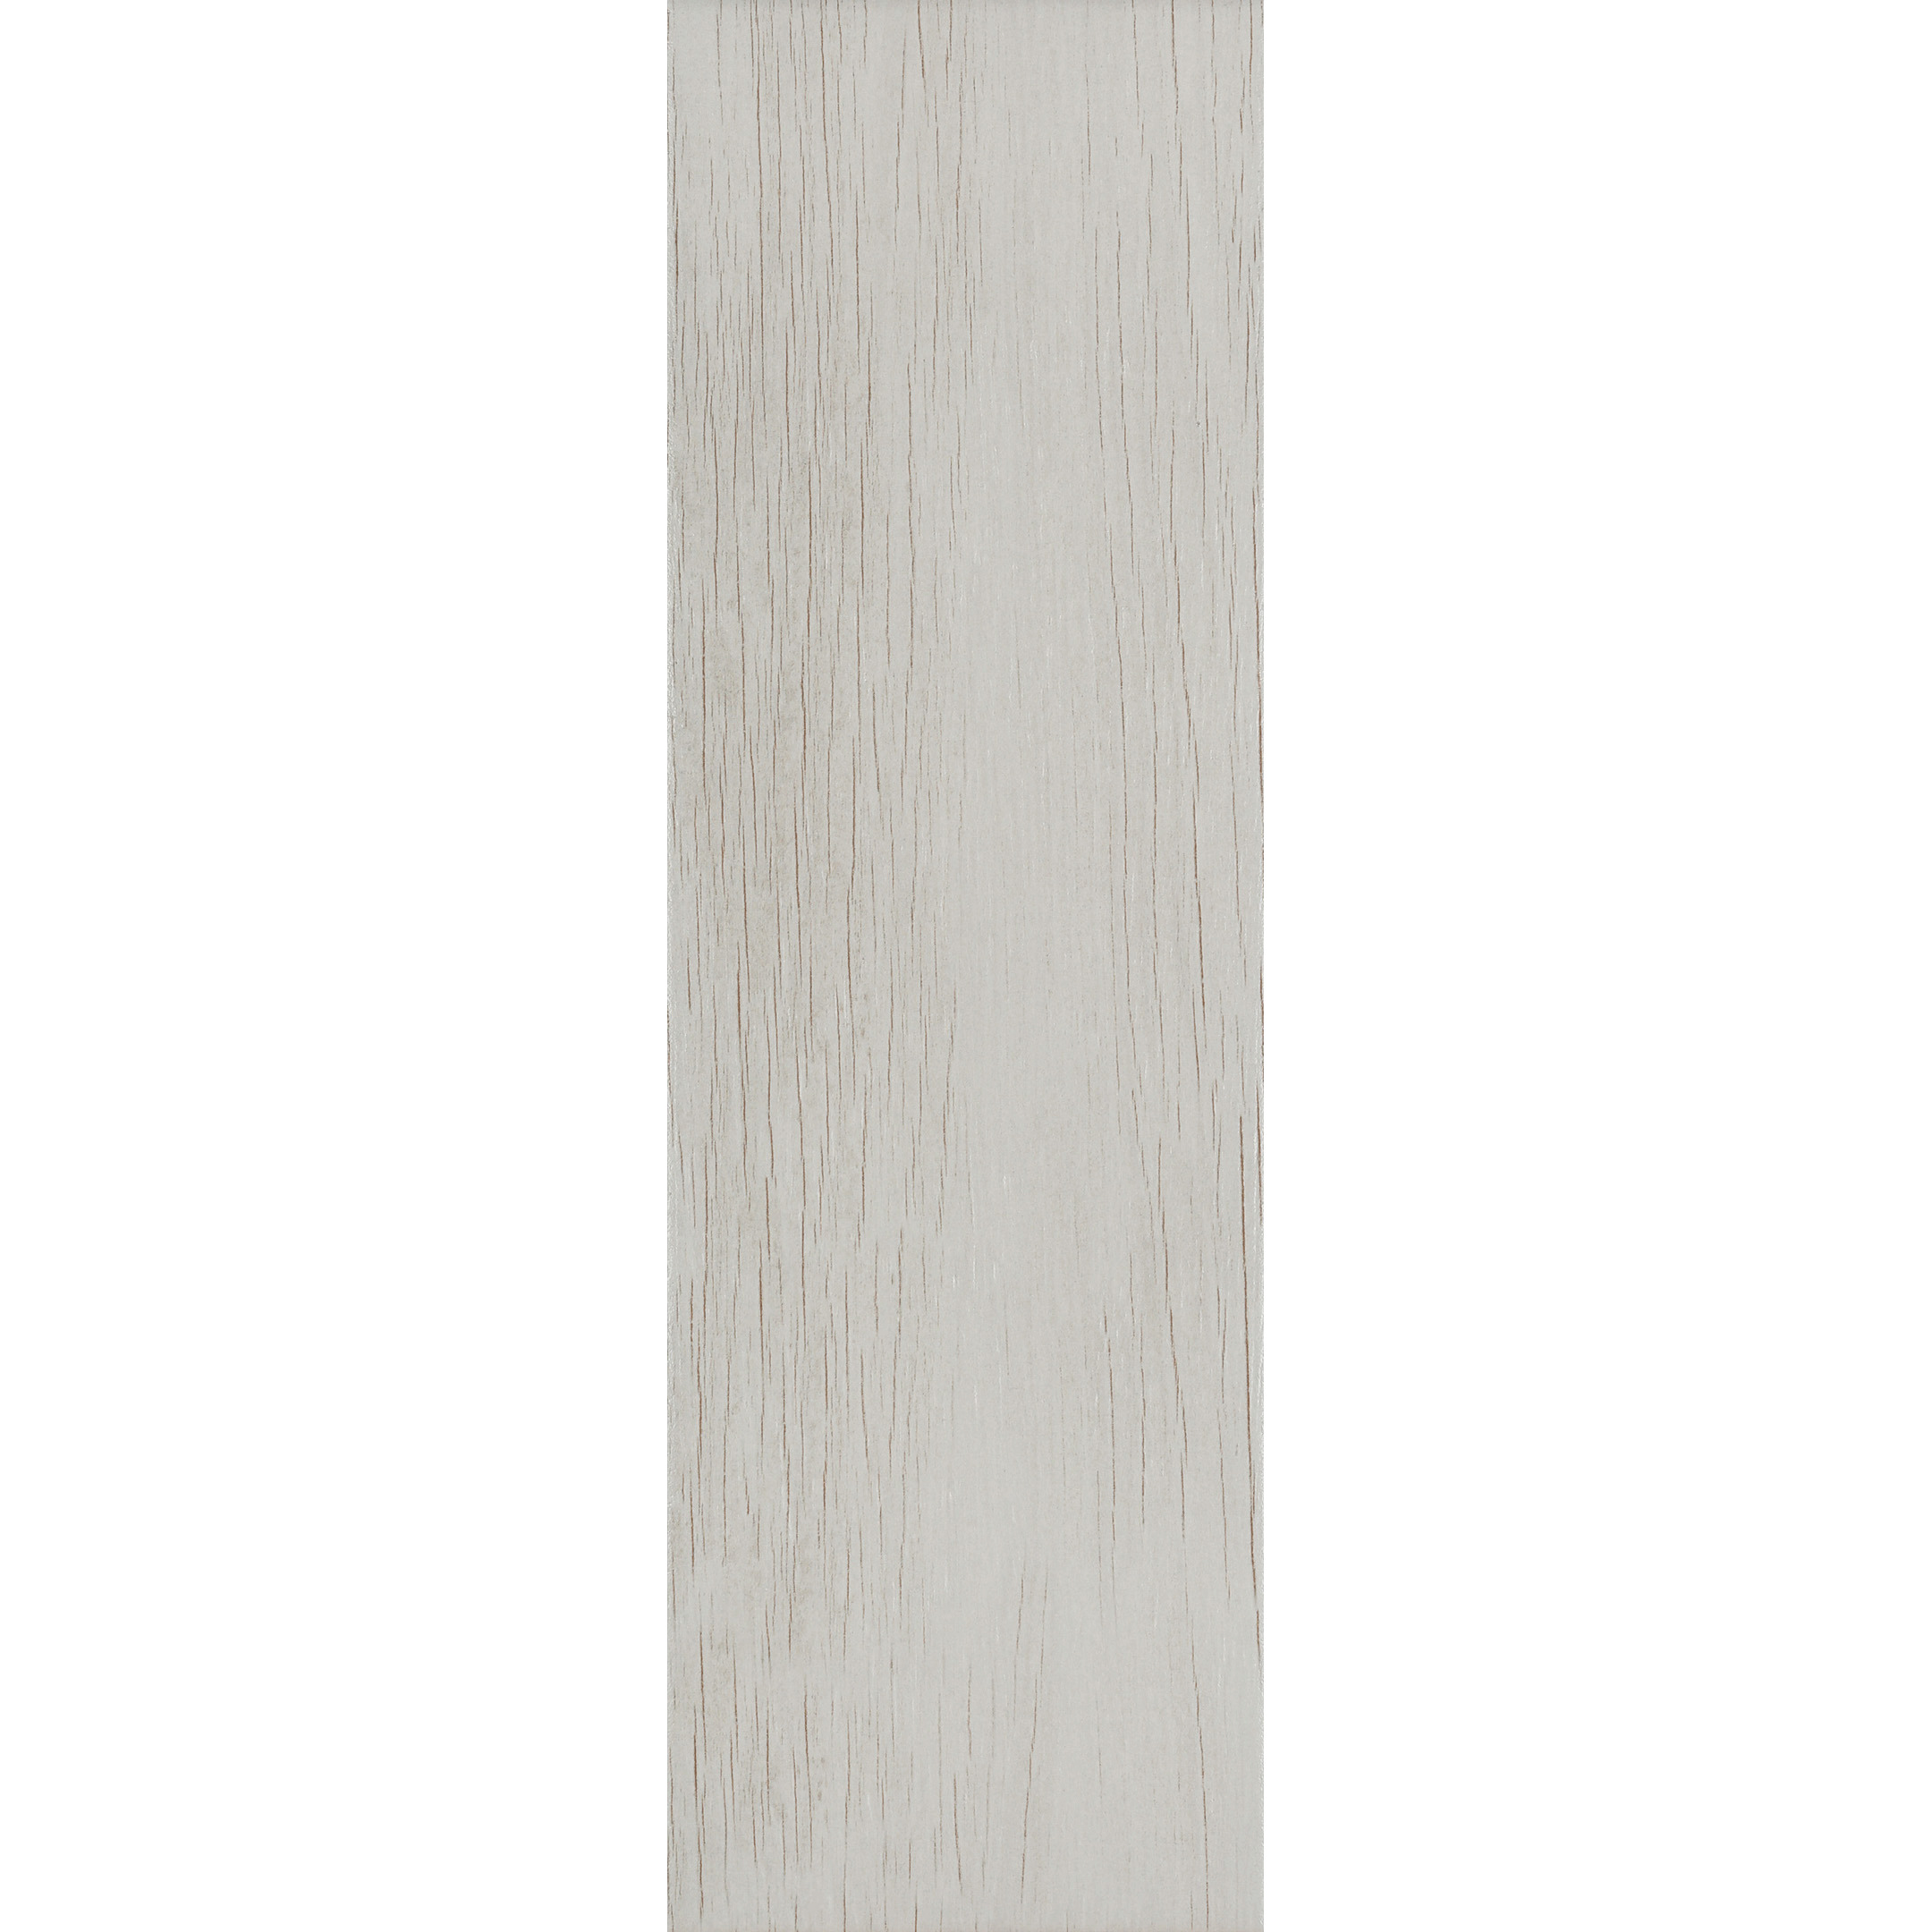 фото Керамогранит cersanit finwood белый матовый 598х185х7,5 мм (11 шт.=1,216 кв.м)